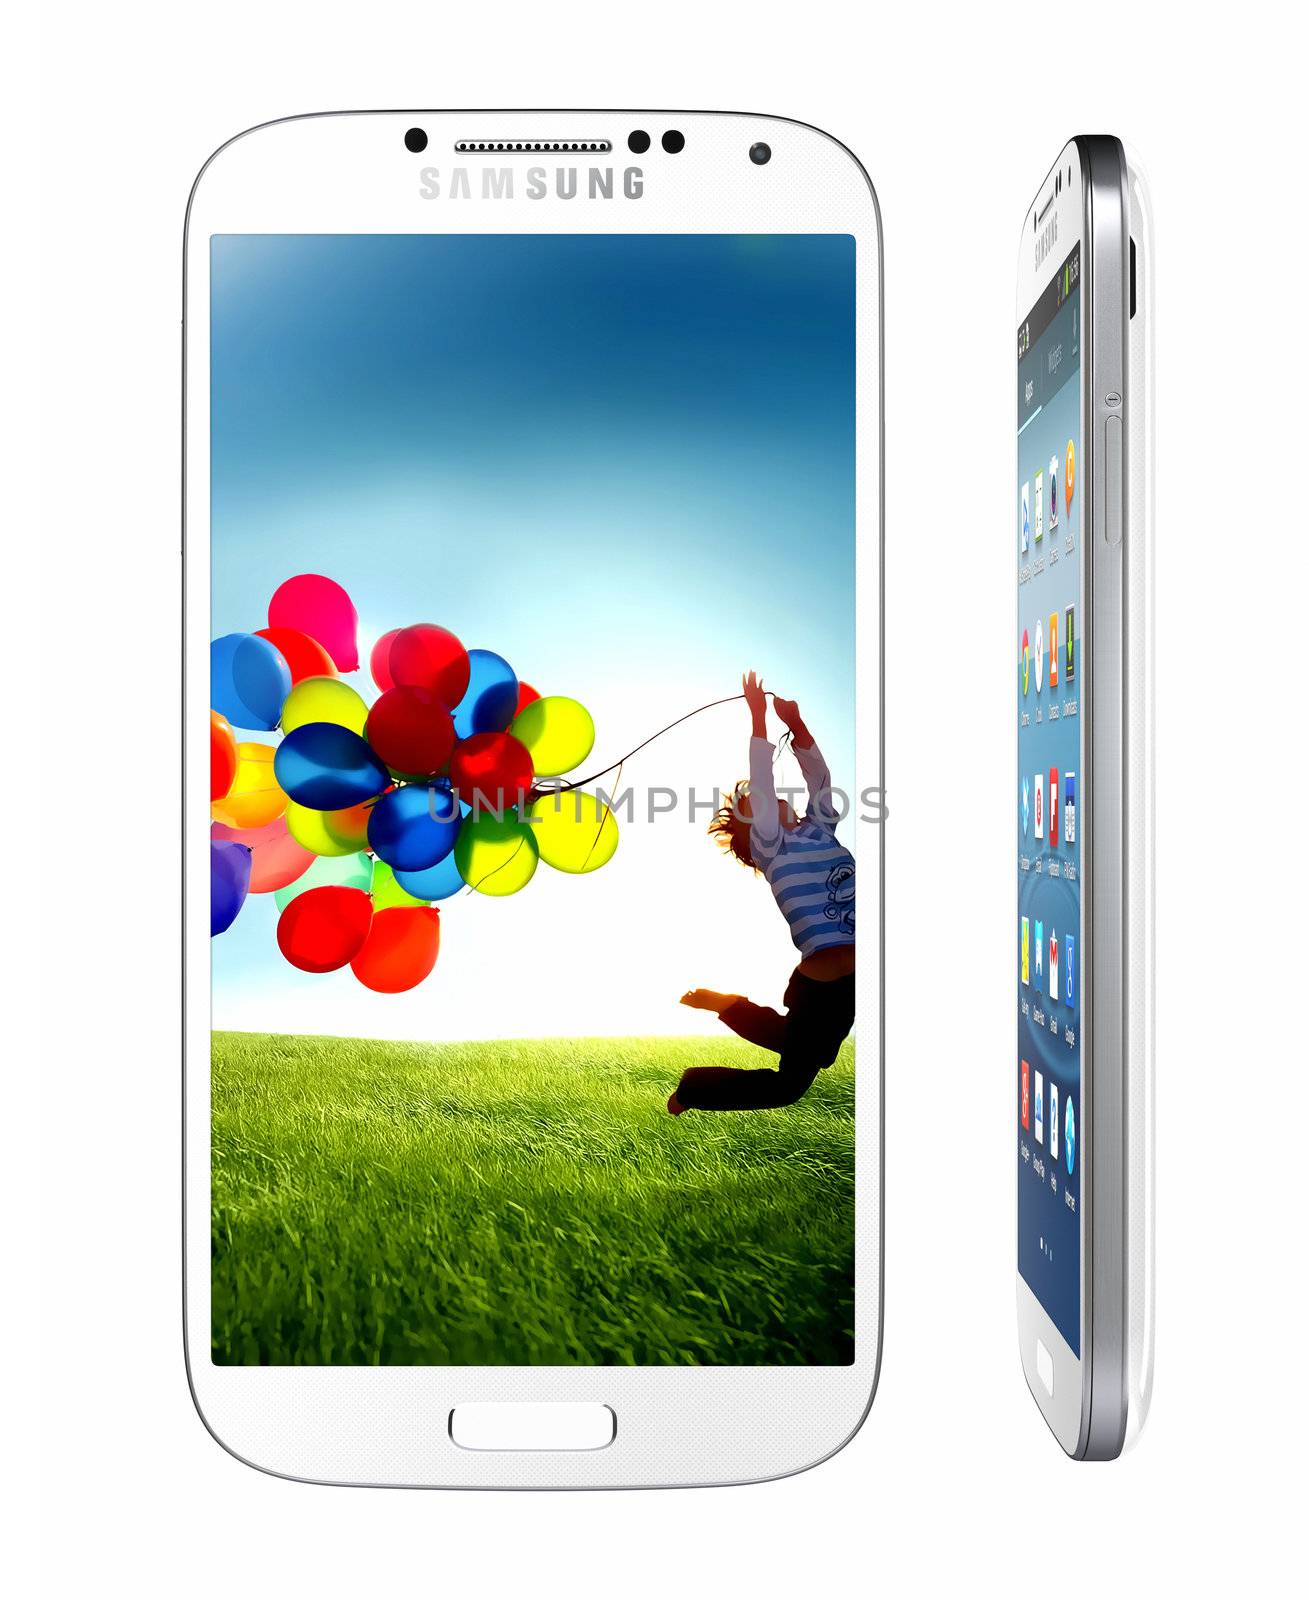 Samsung Galaxy S4  by manaemedia